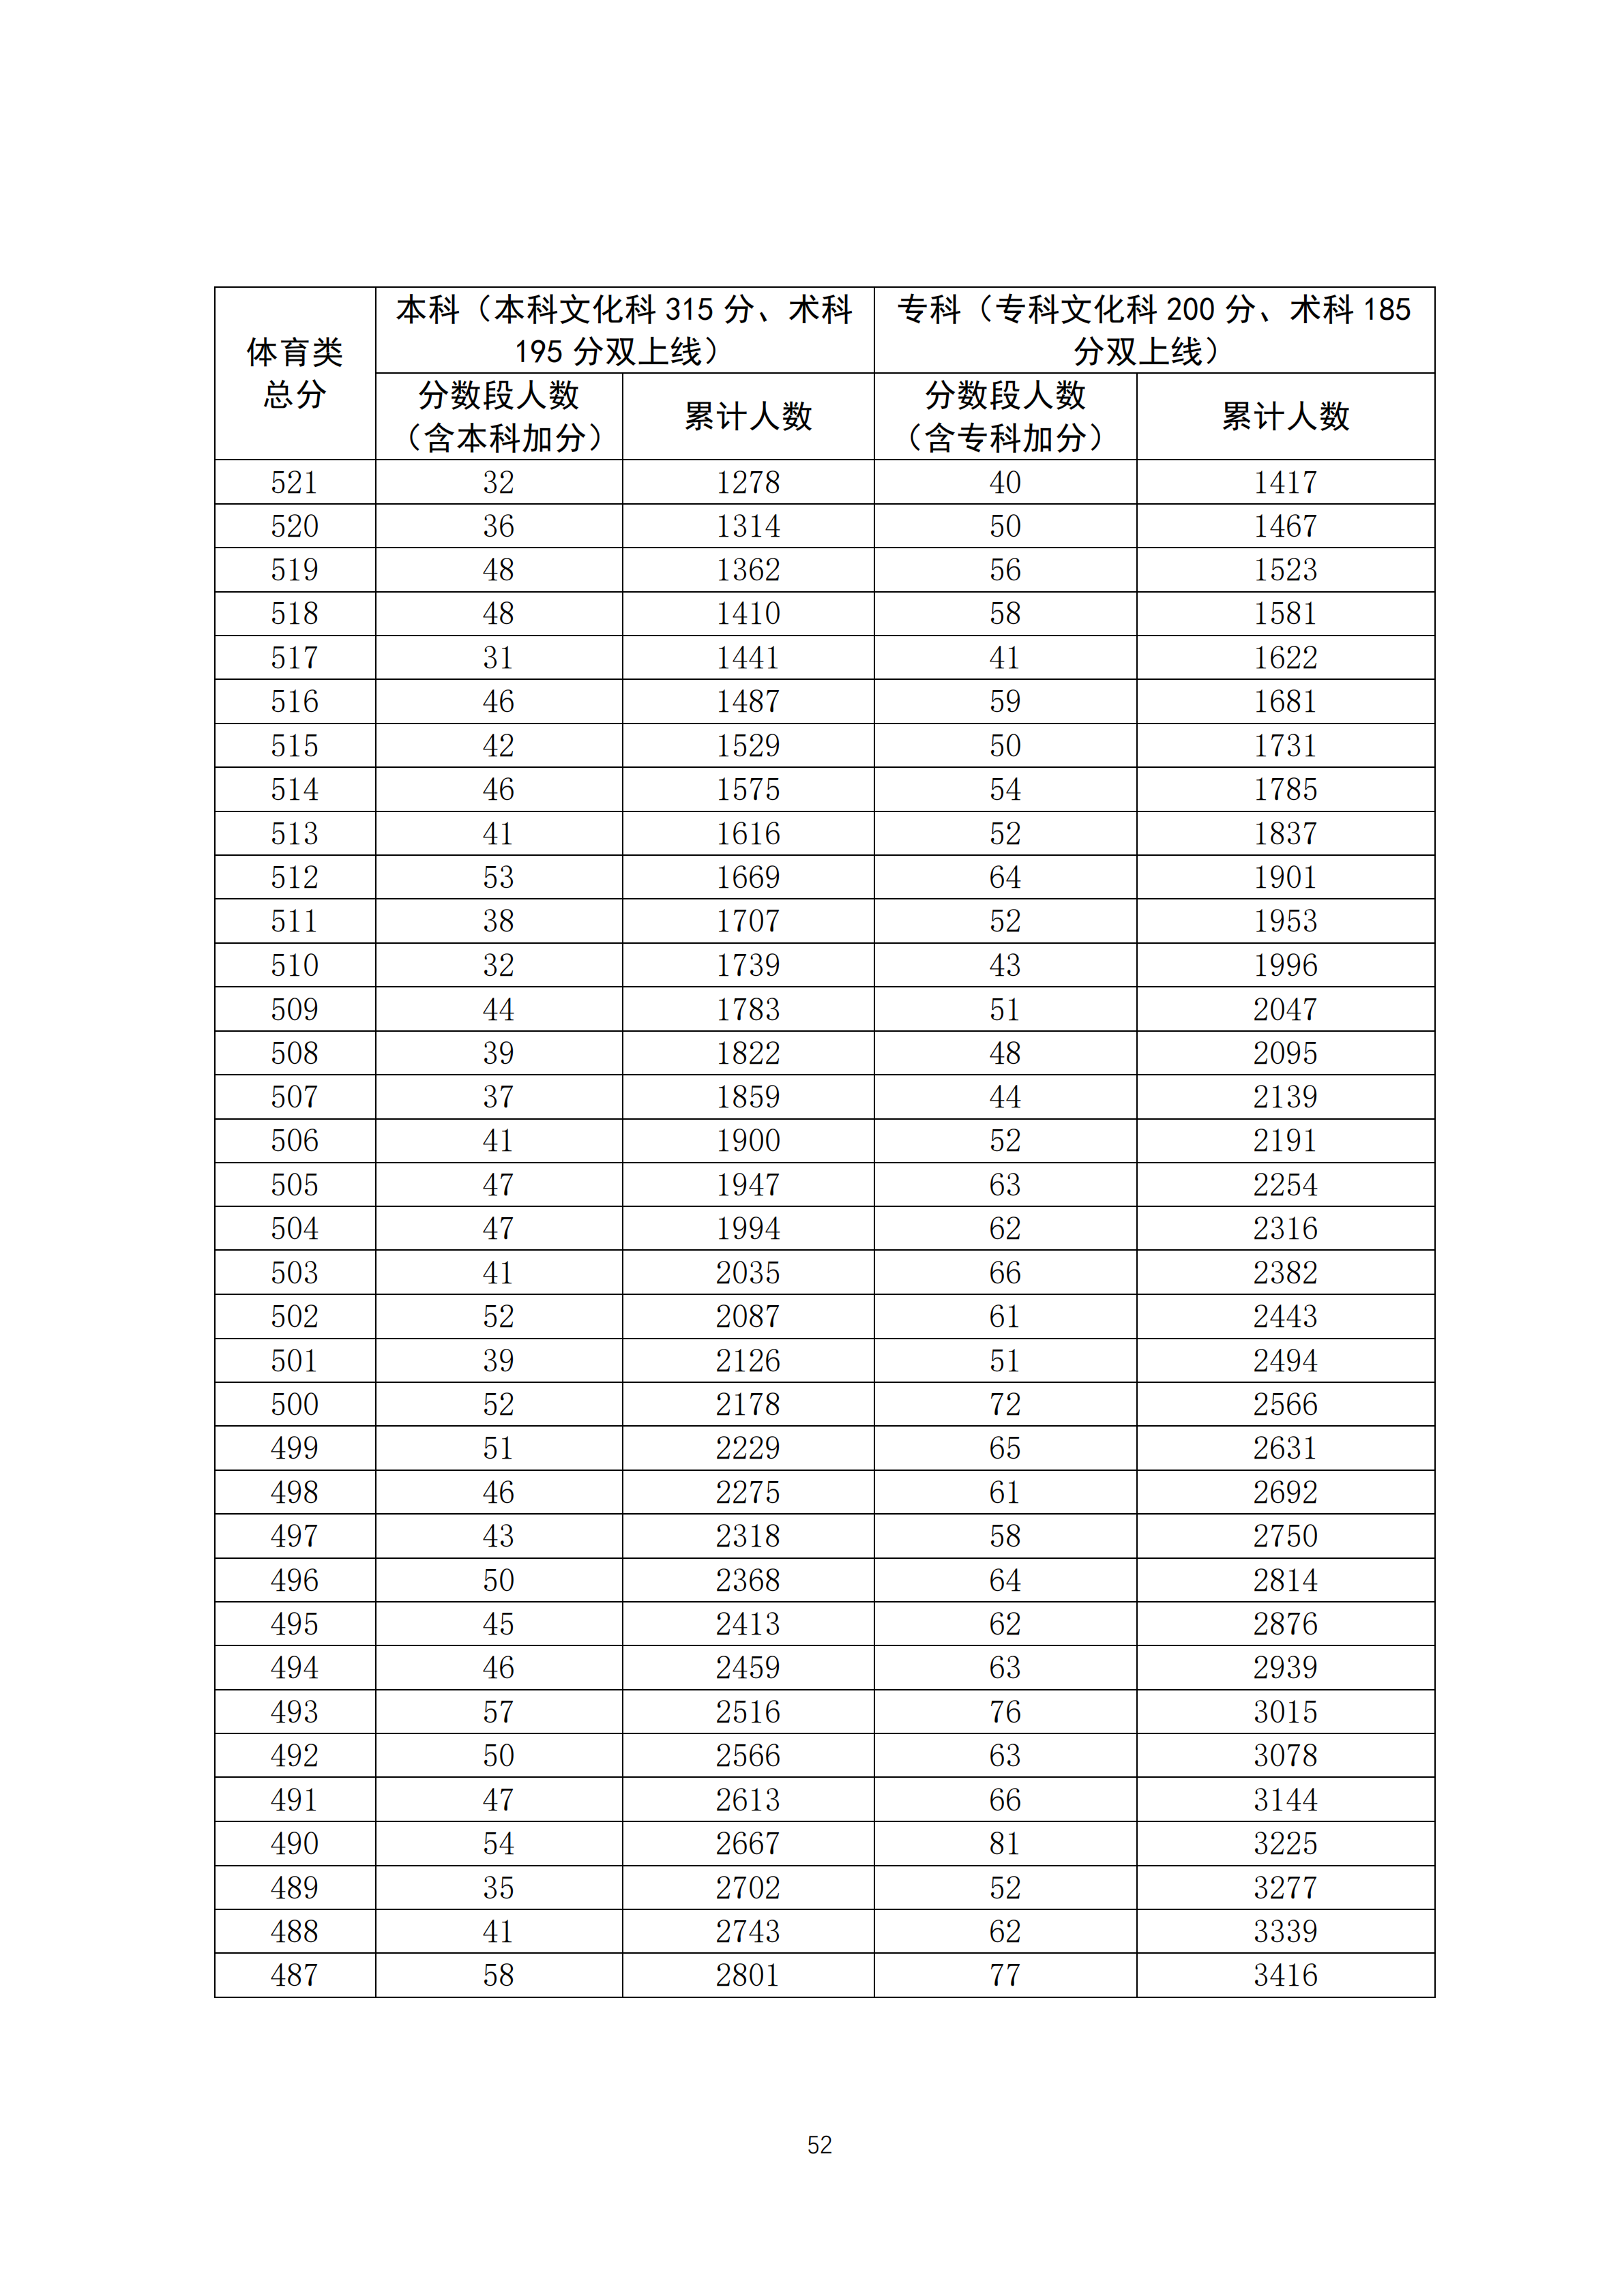 2020广东高考一分一段表 体育类成绩排名及累计考生人数